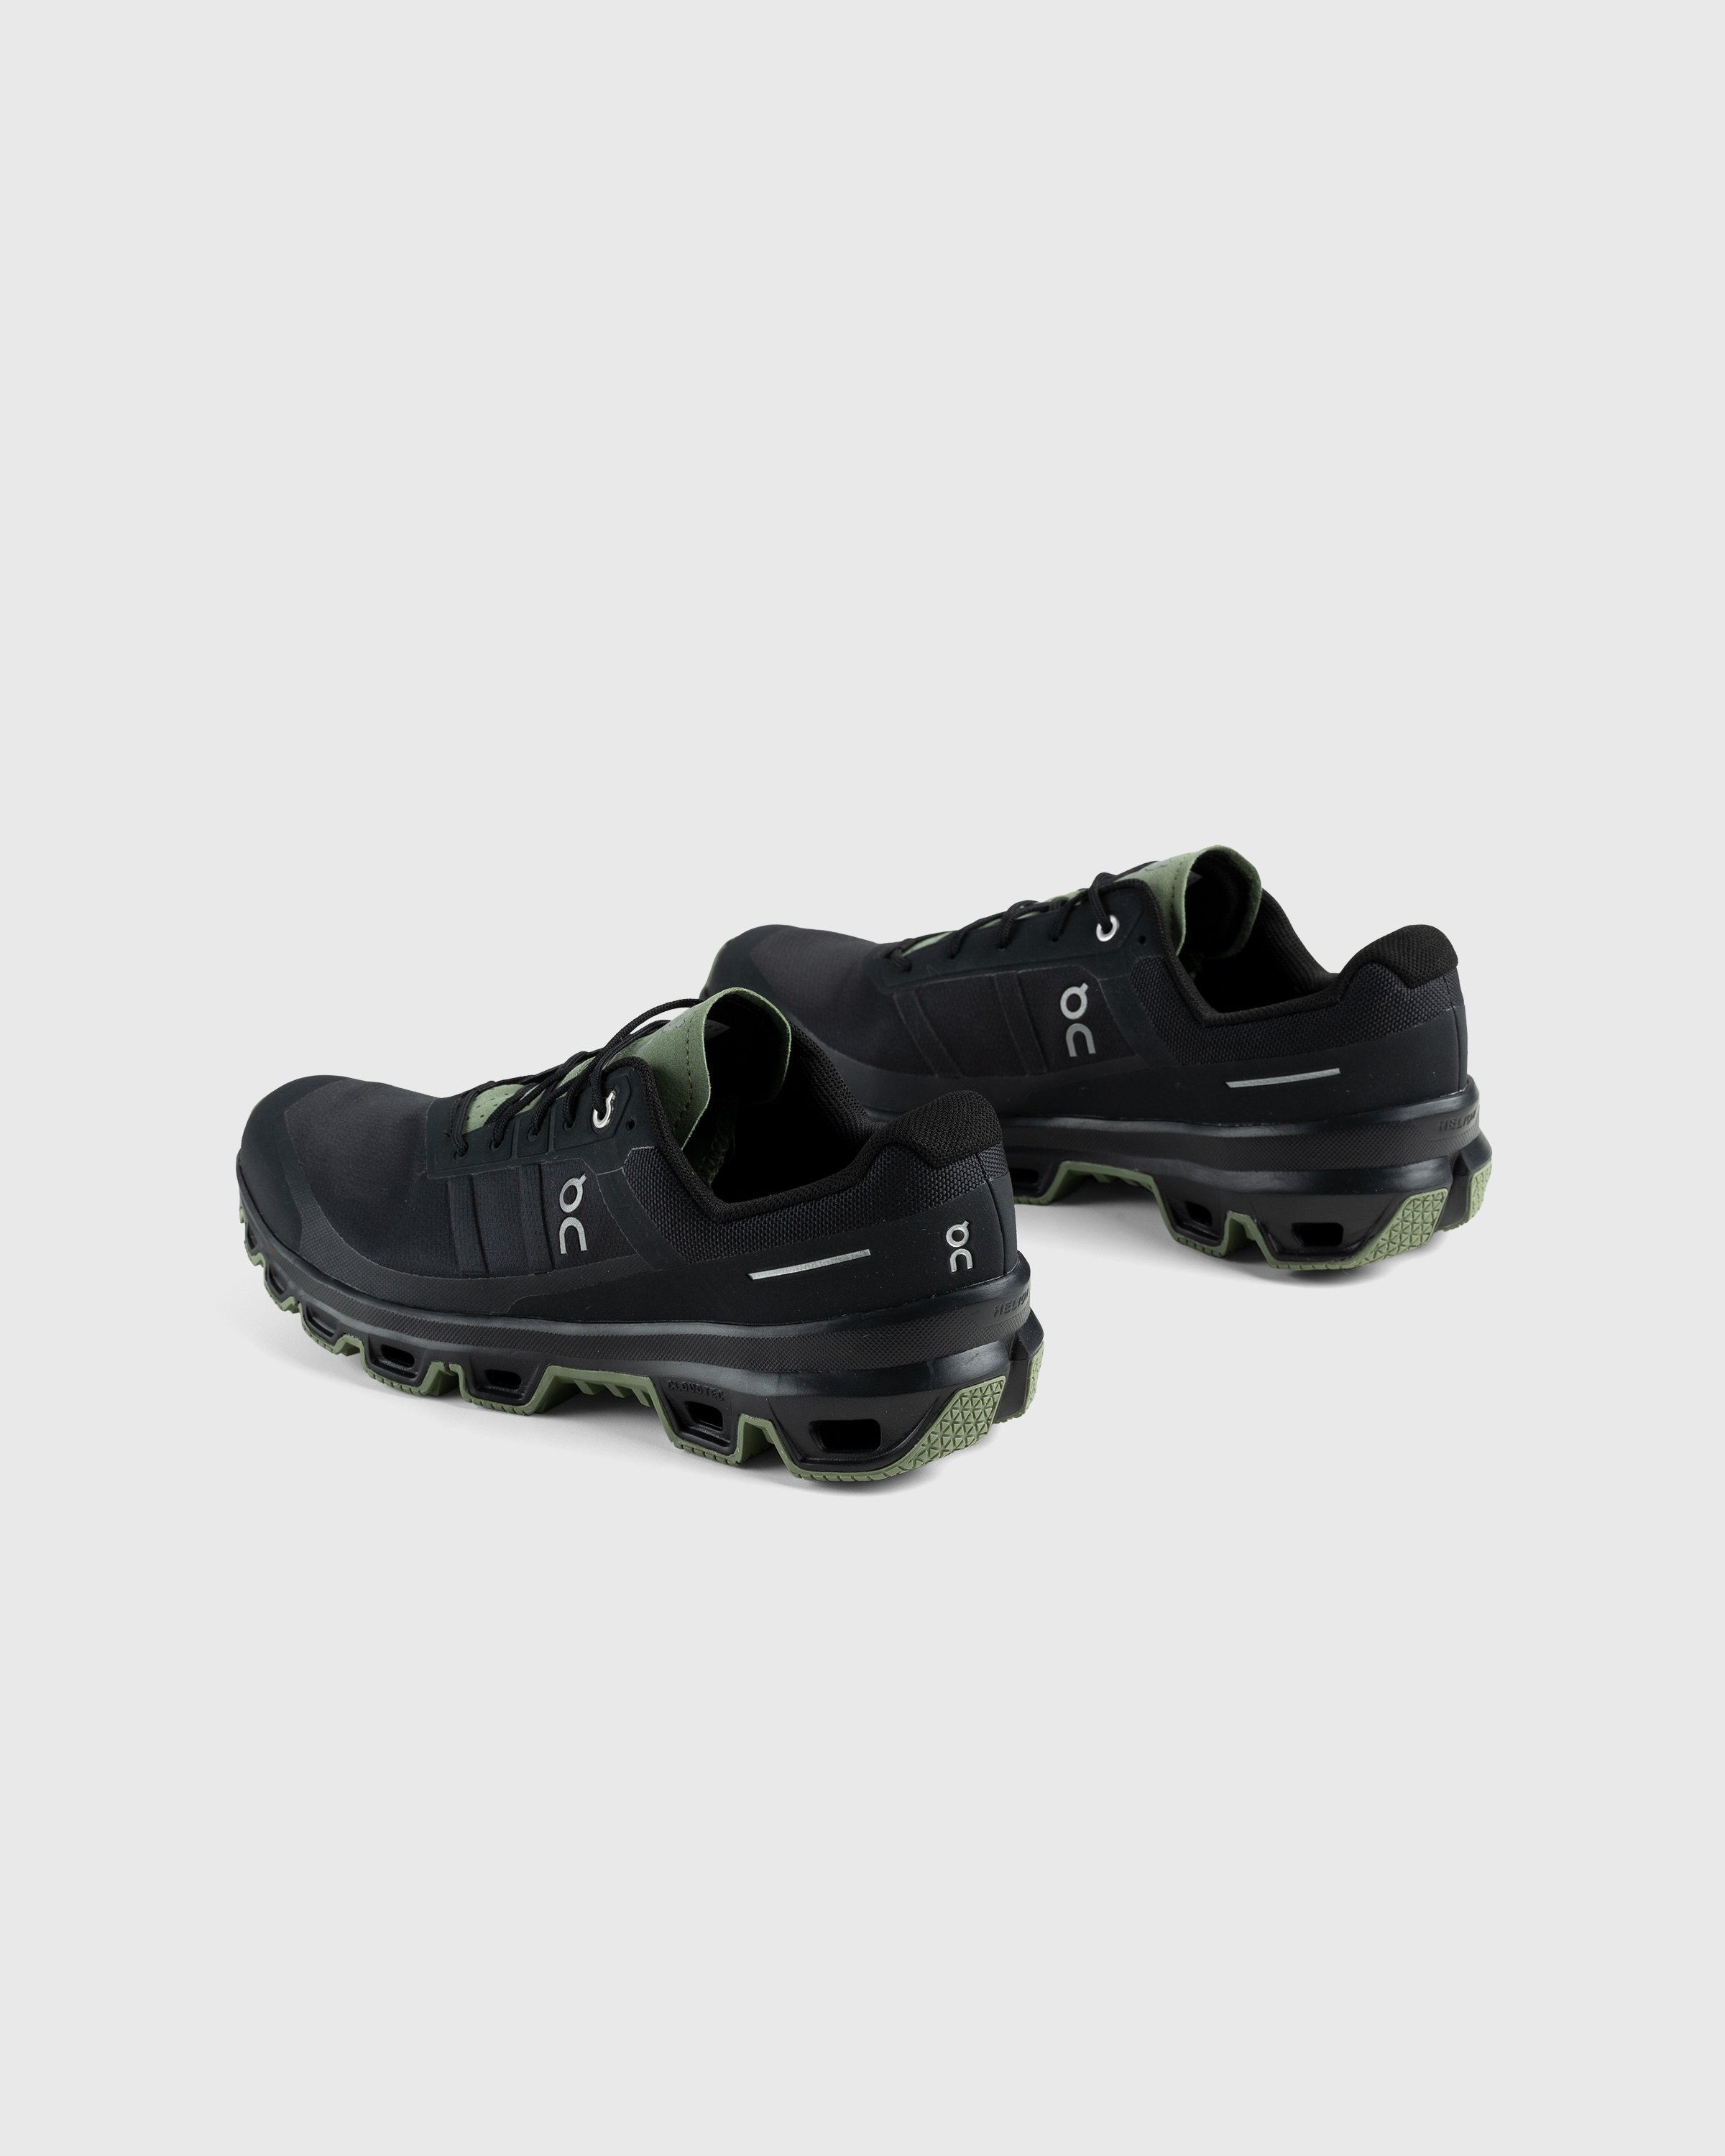 On - Cloudventure Black/Reseda - Footwear - Black - Image 4